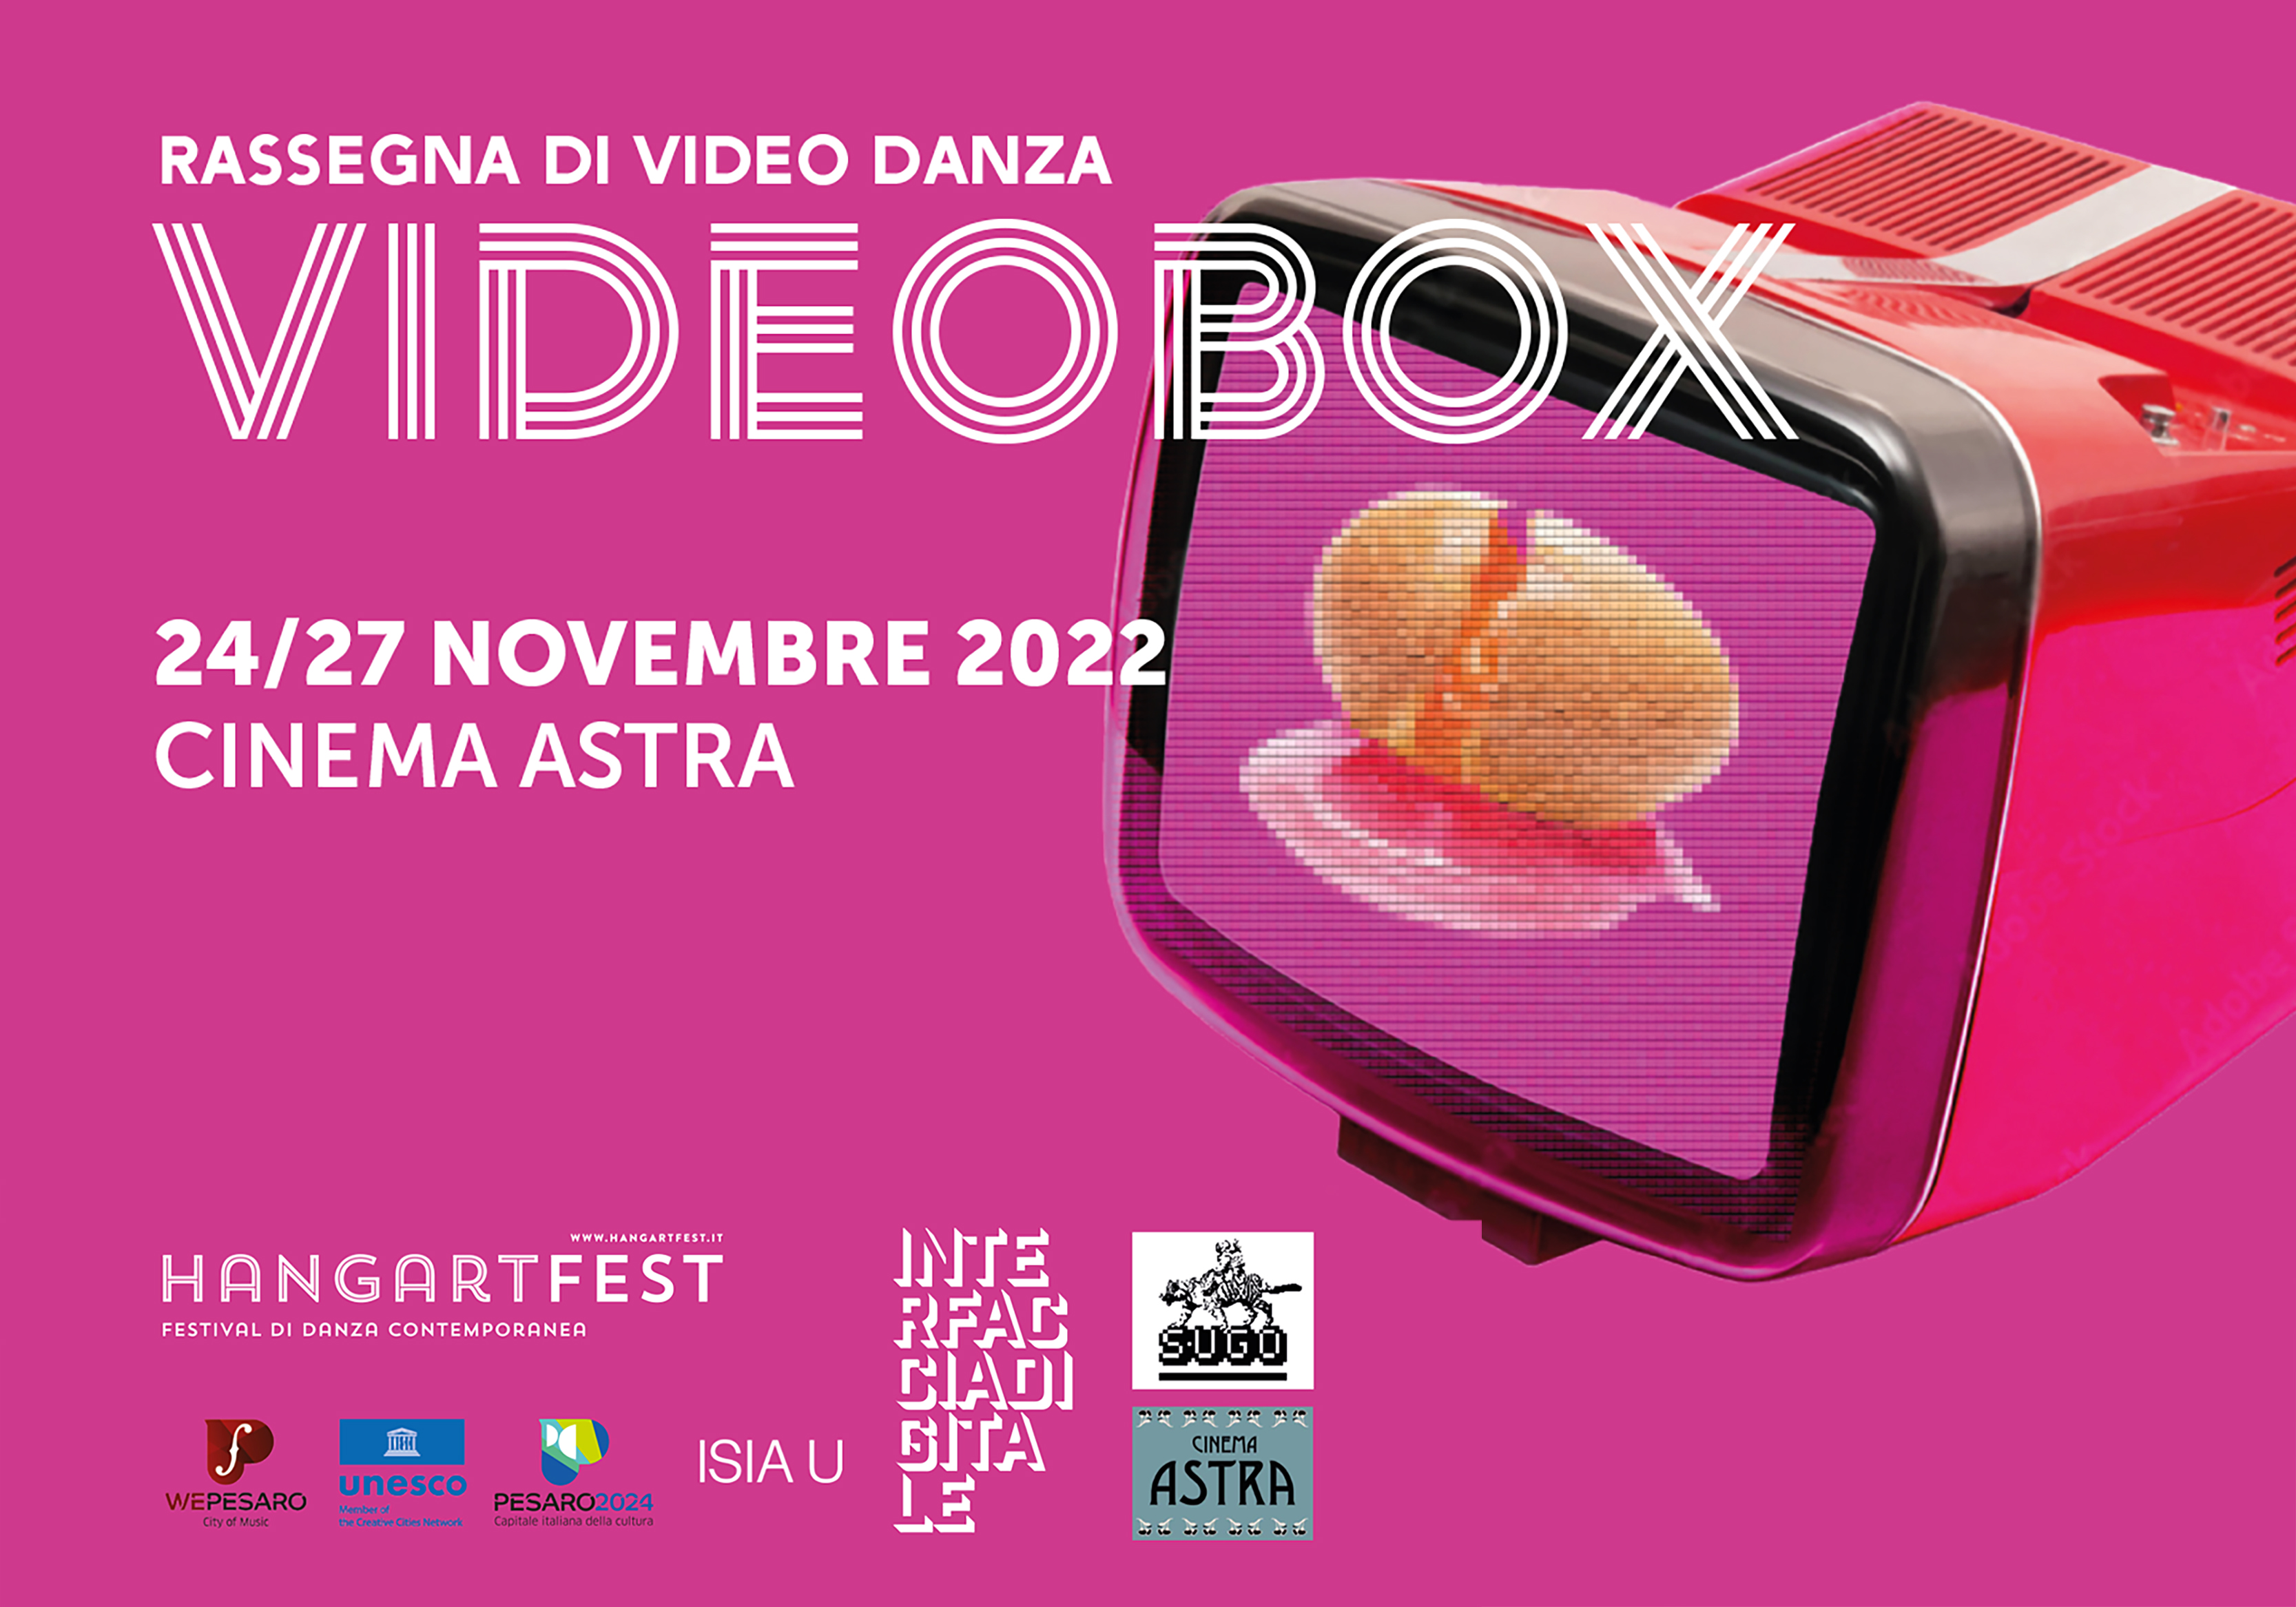 VIDEOBOX, la rassegna di videodanza di Hangartfest